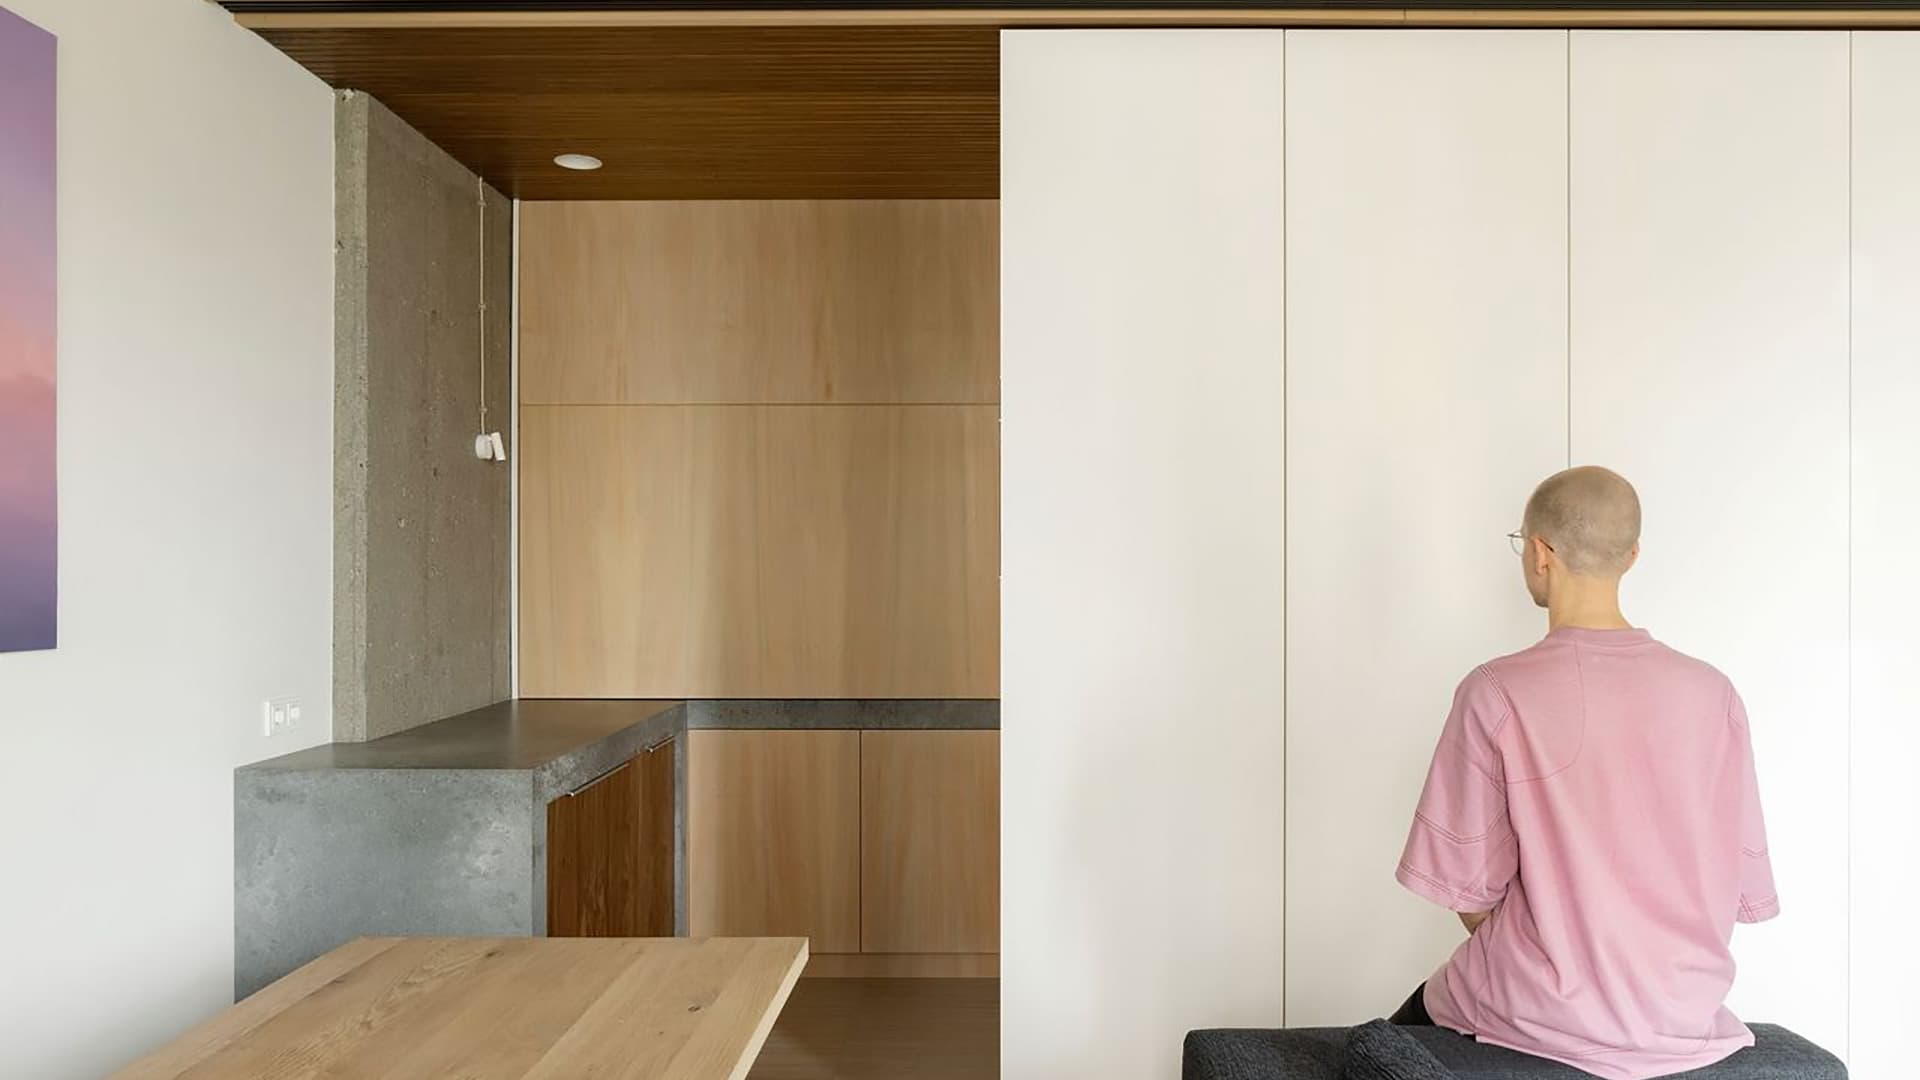 Светлая квартира с японскими корнями – проект бюро DUDES architects